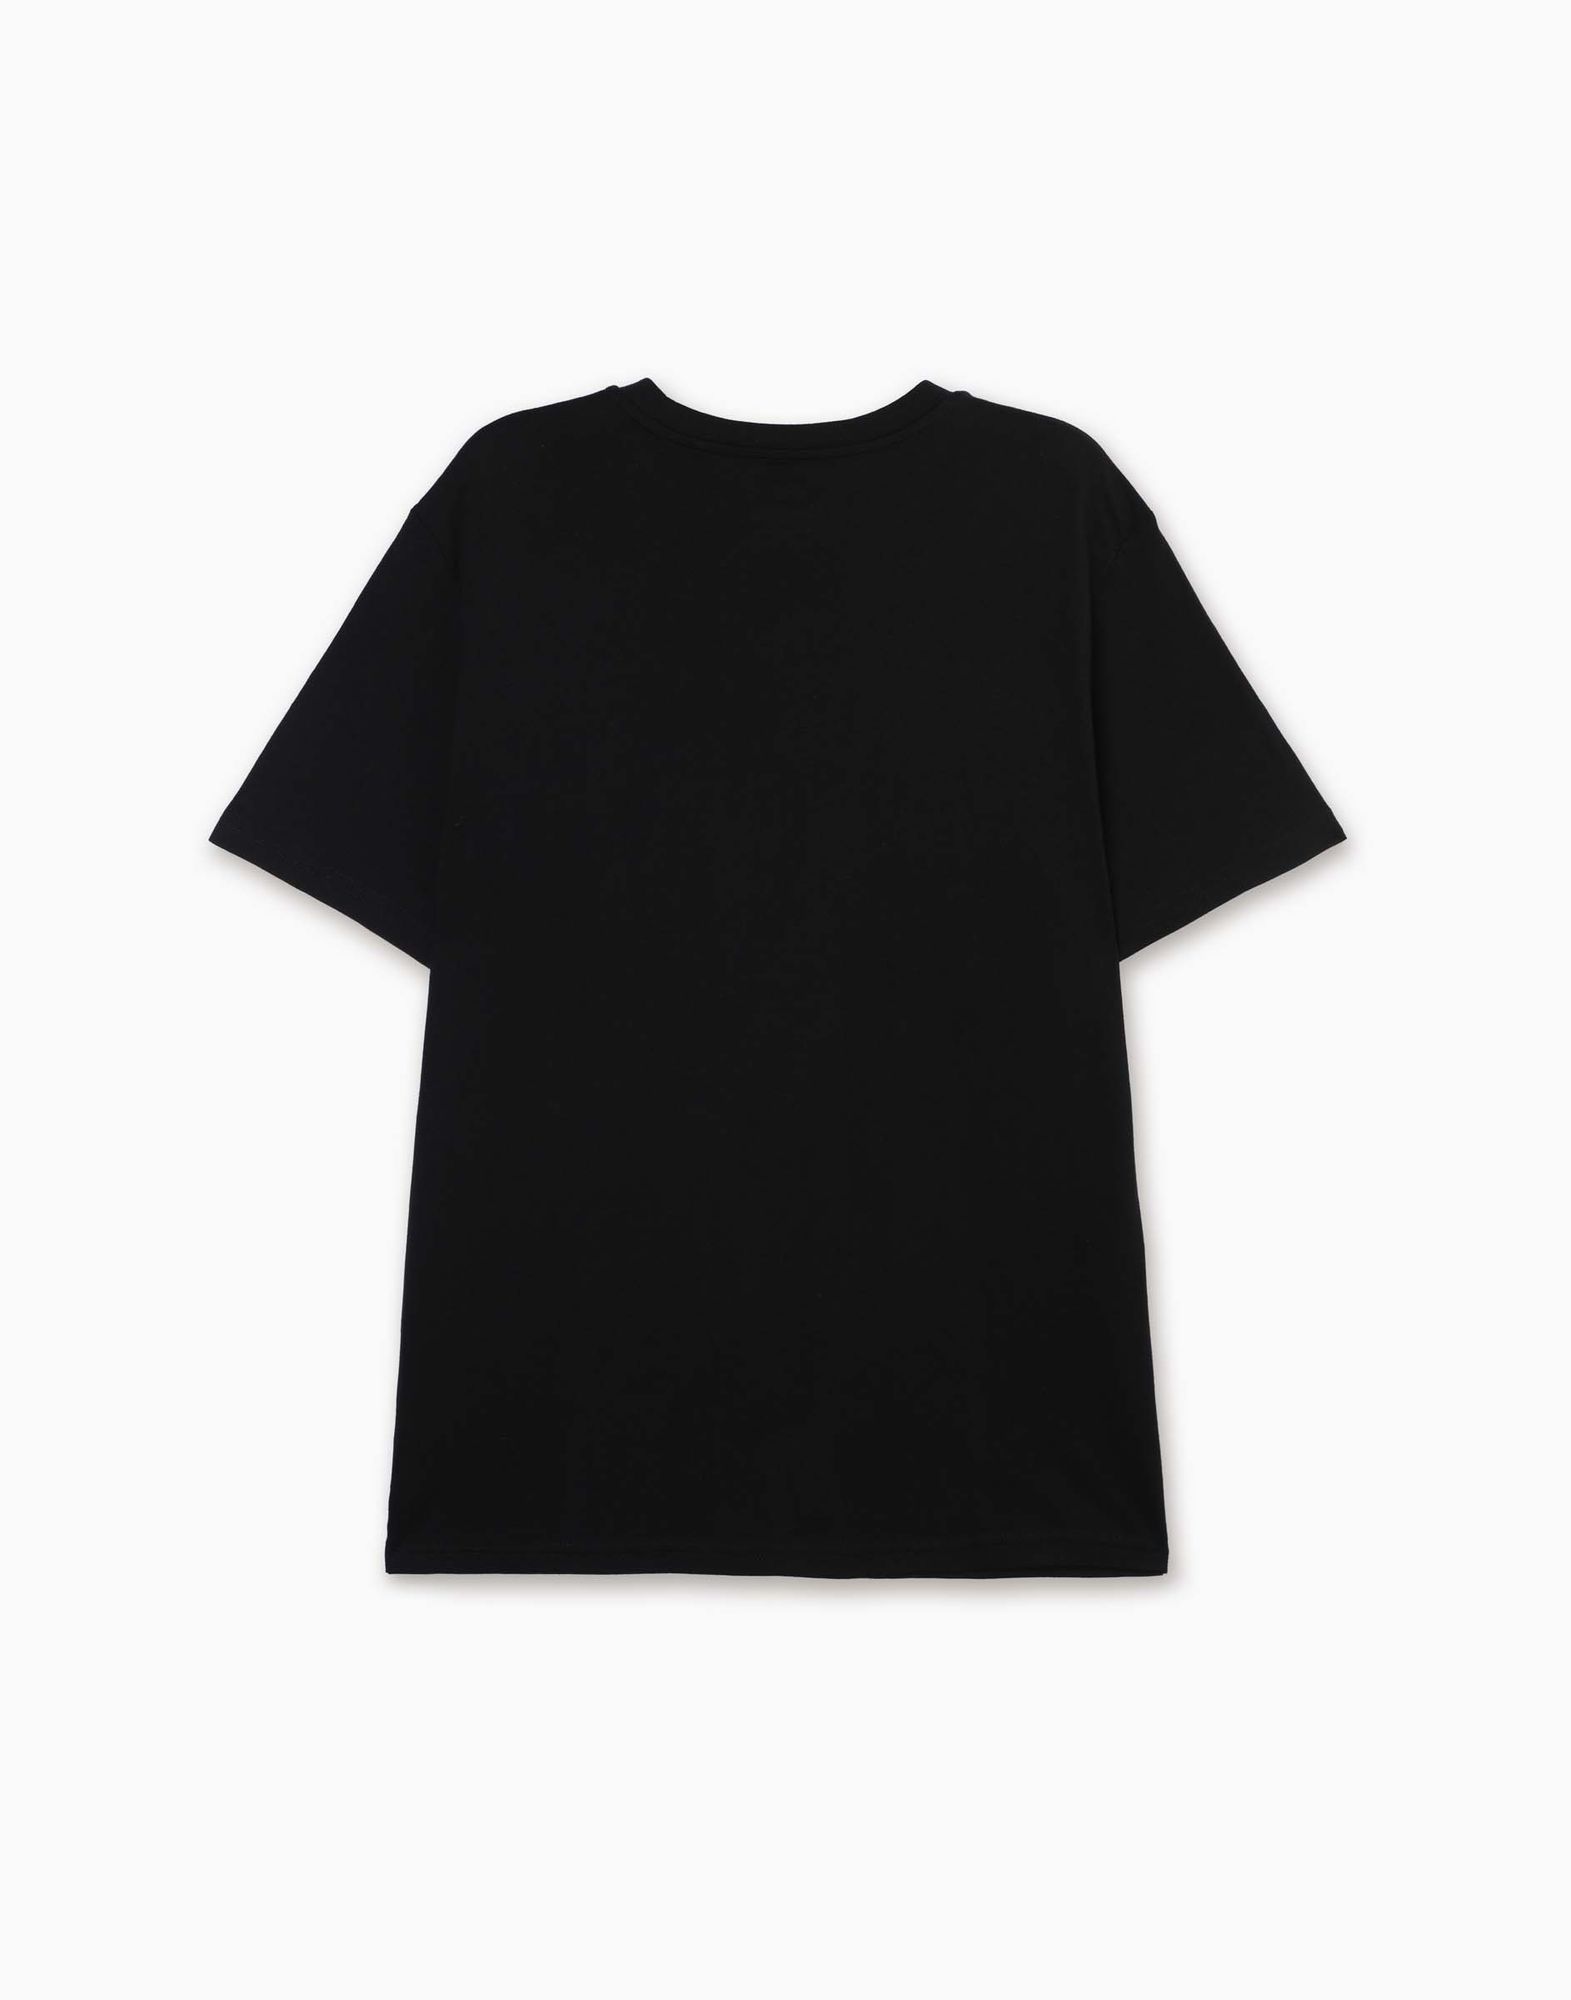 Чёрная футболка с новогодним принтом для мальчика-2